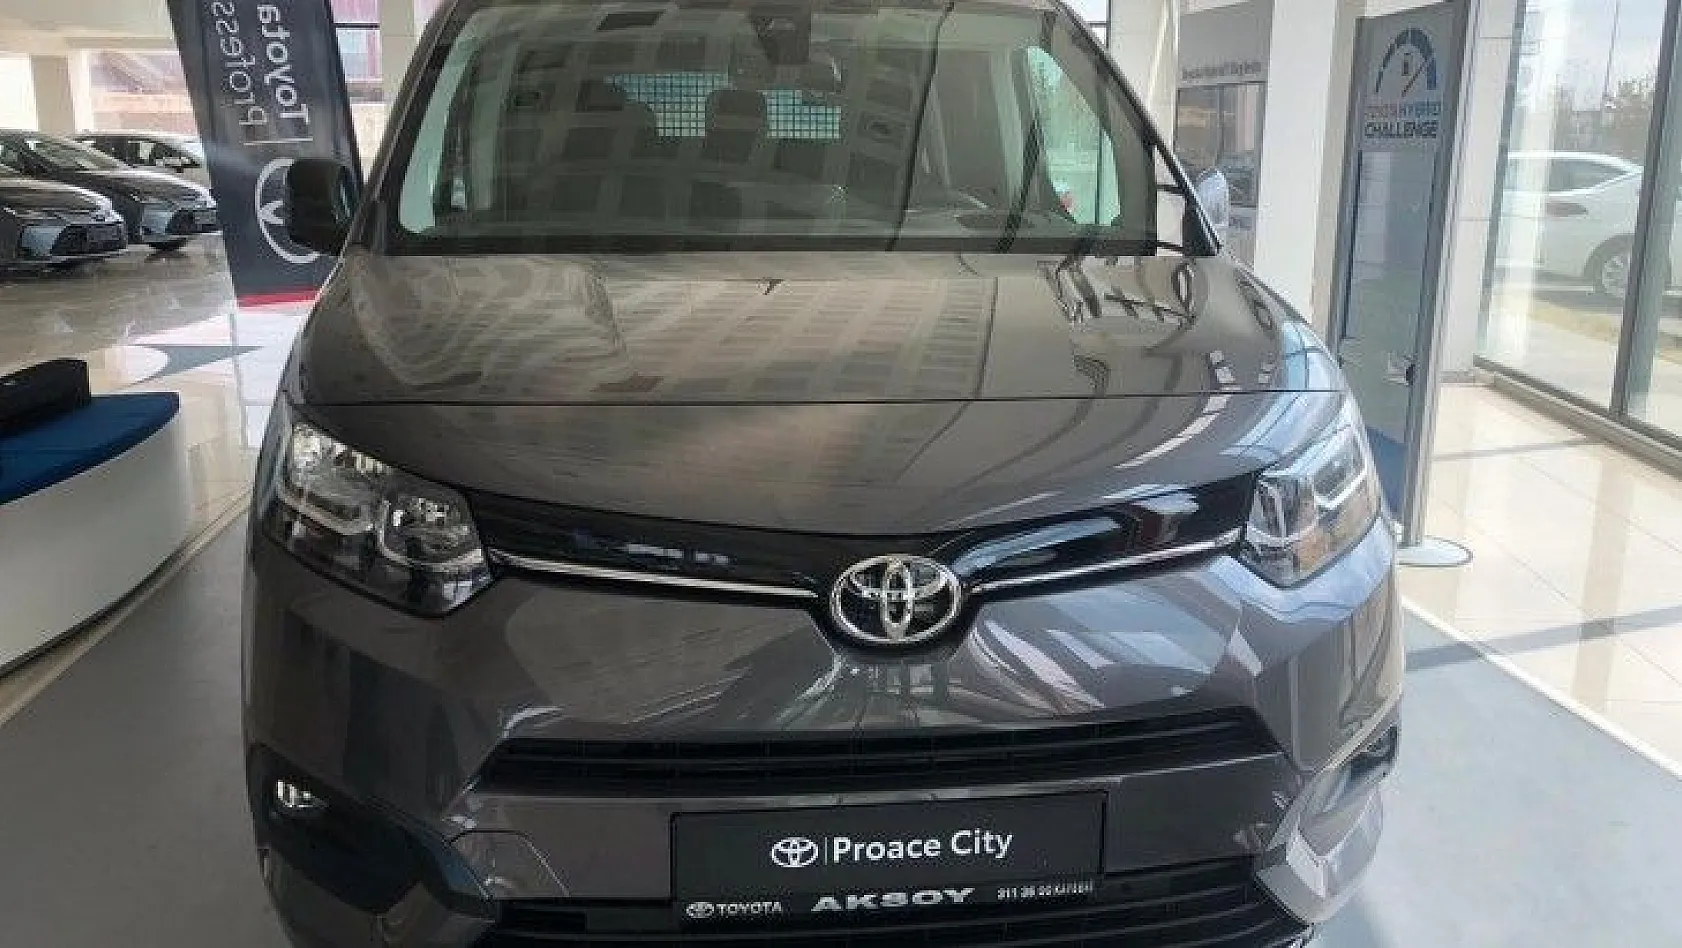 Toyota'nın yeni hafif ticarisi 'Proace City' lansman özel fiyatları ile alıcılarını bekliyor